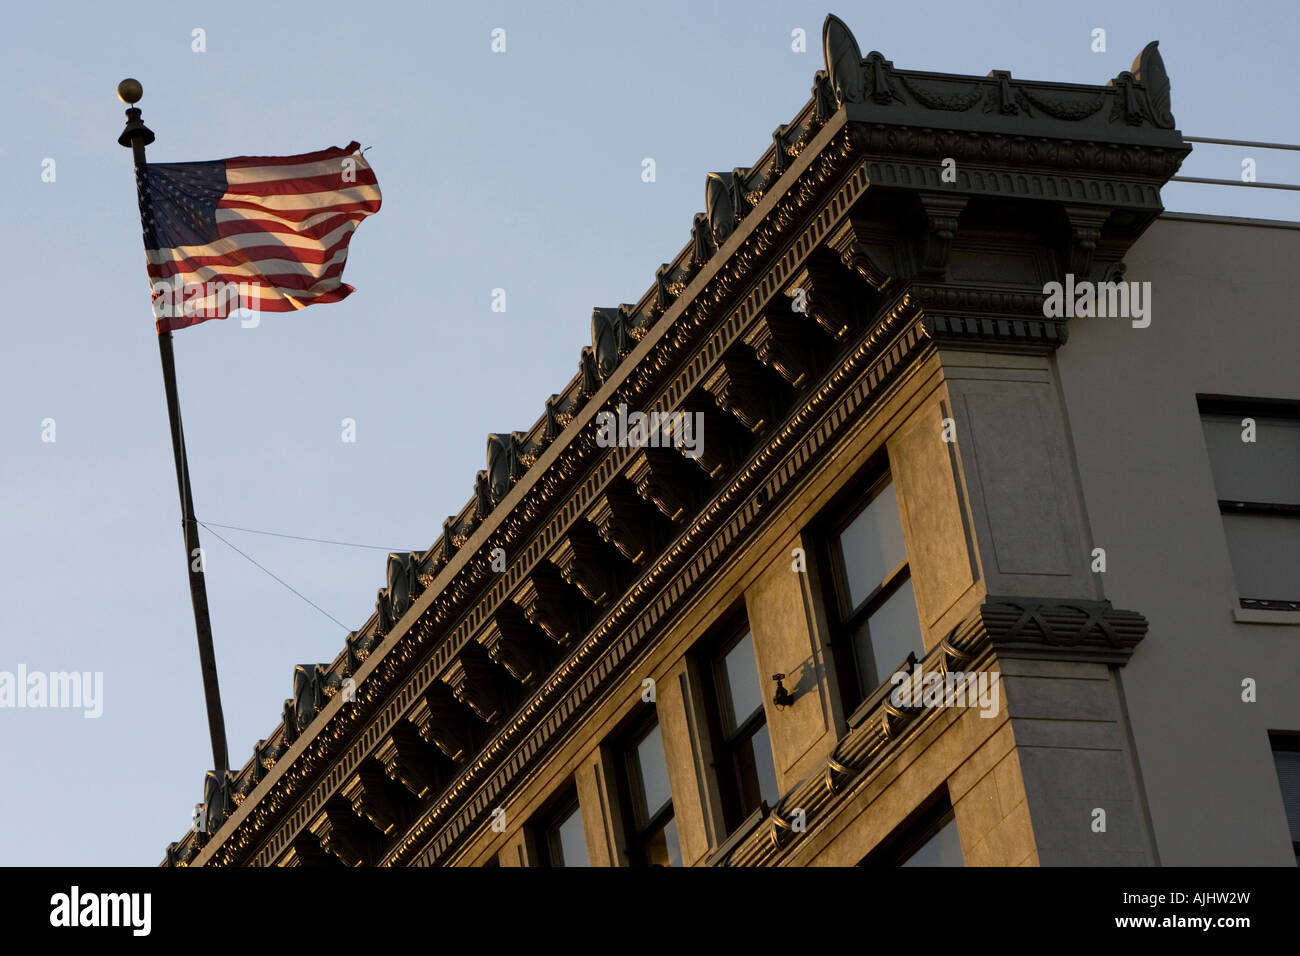 American stars and stripes flag flying high sur un immeuble de bureaux dans la région de Pasadena, Californie, USA. Banque D'Images